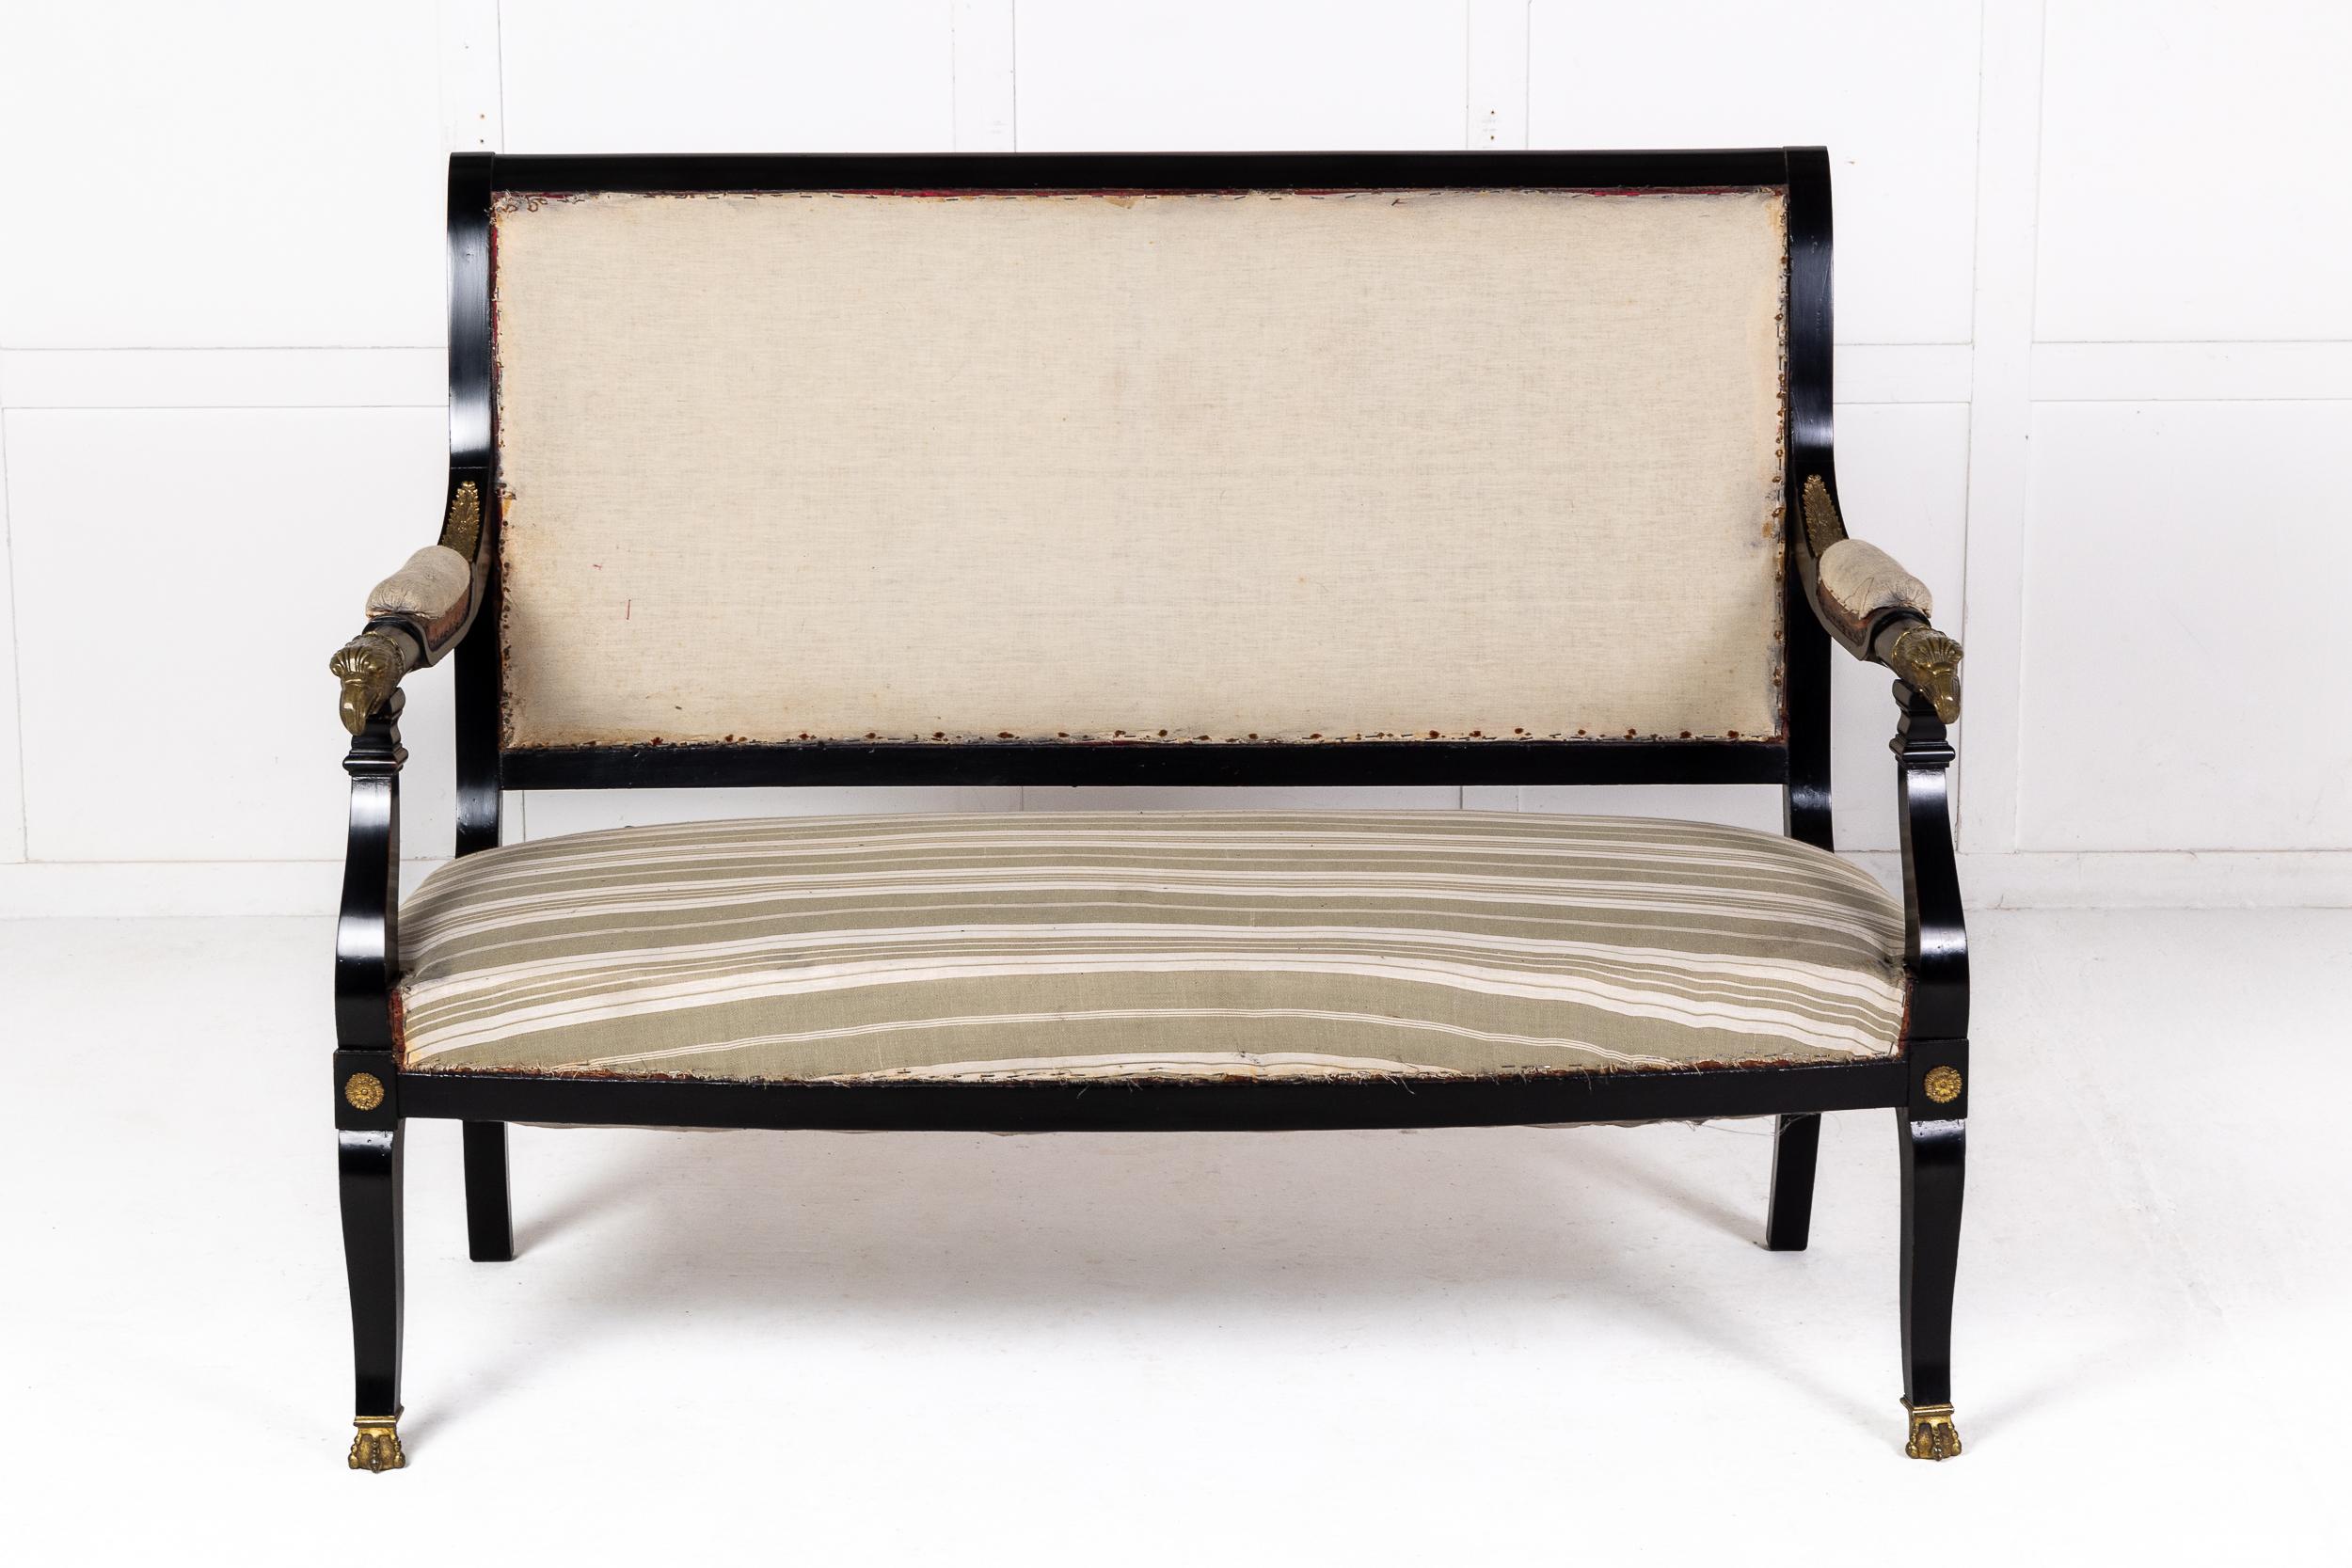 Ein französisches Empire-Sofa aus Ebenholz mit feinen Adlerkopfbeschlägen.

Dieses schöne Sofa im Empire-Stil des frühen 19. Jahrhunderts wurde um 1910 in Frankreich hergestellt. Die ebonisierte Oberfläche steht in schönem Kontrast zu den feinen